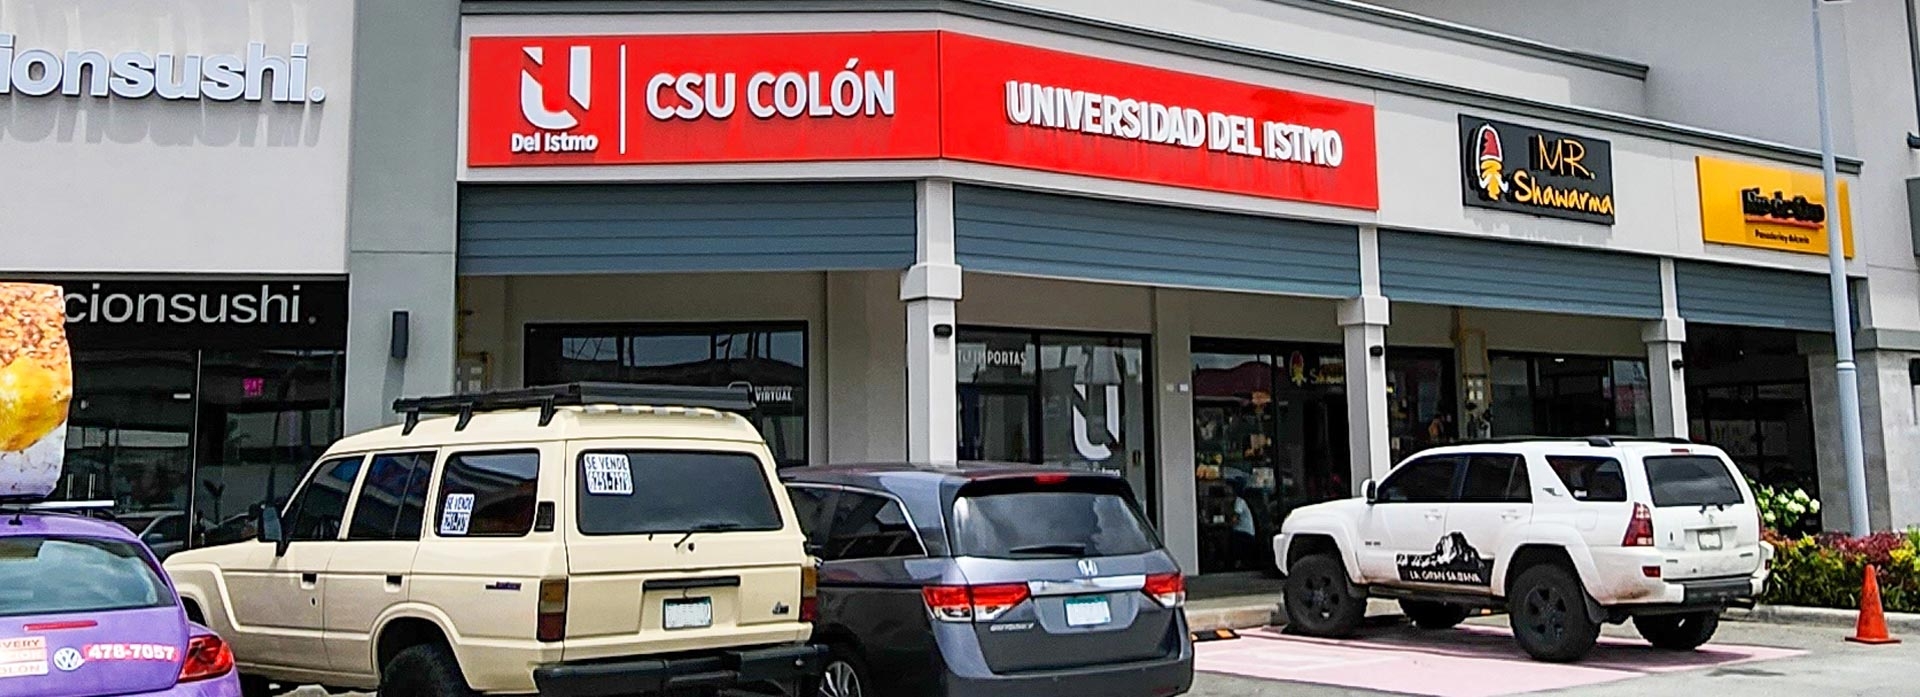 CSU Colón